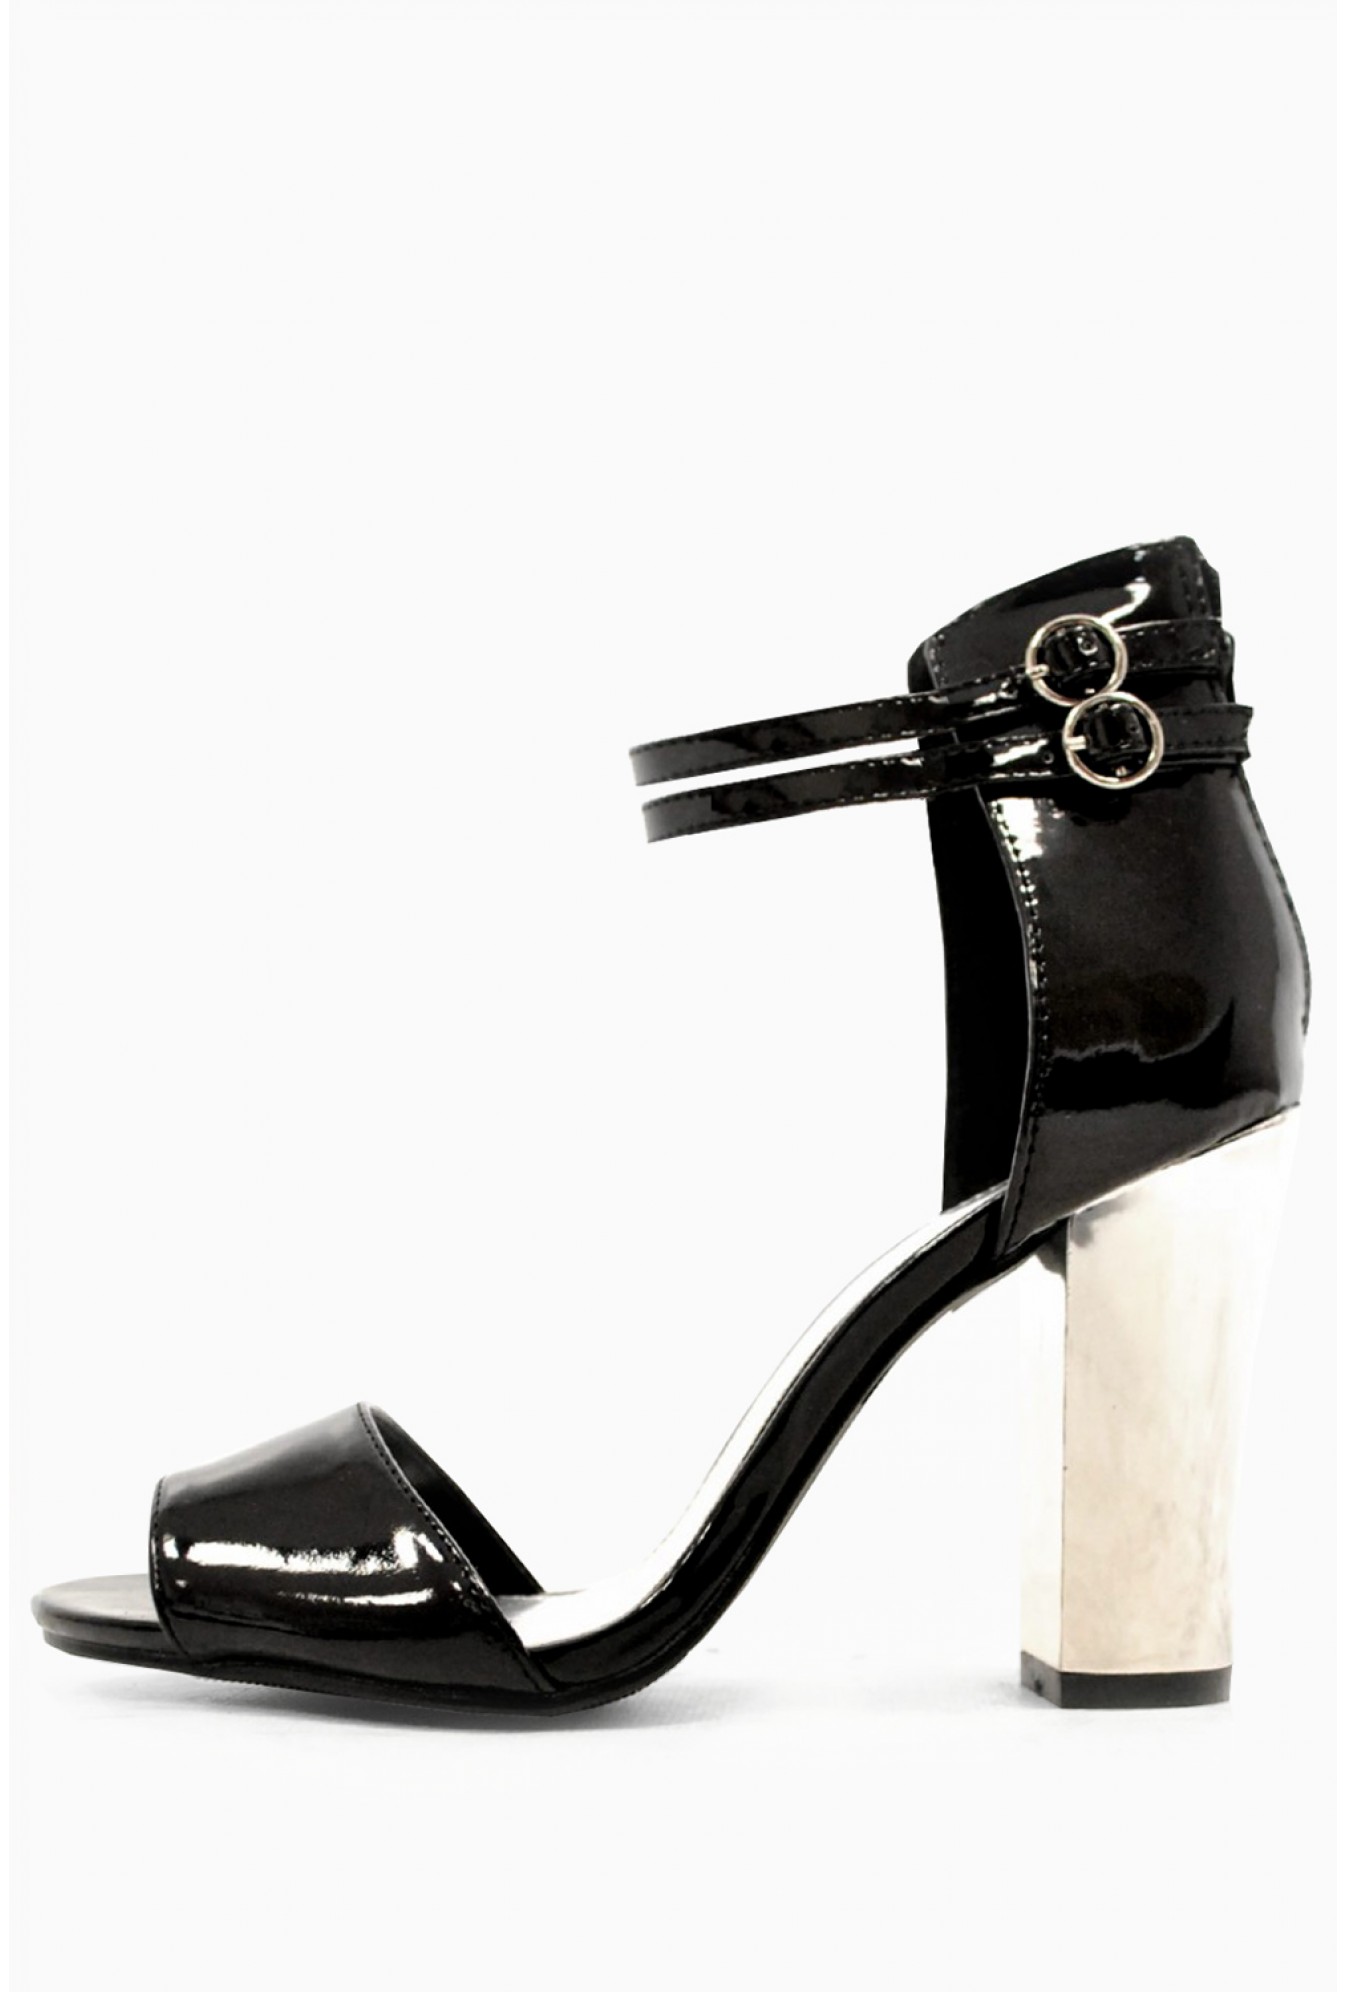 247 Paris Chunky Heels Sandals in Black 